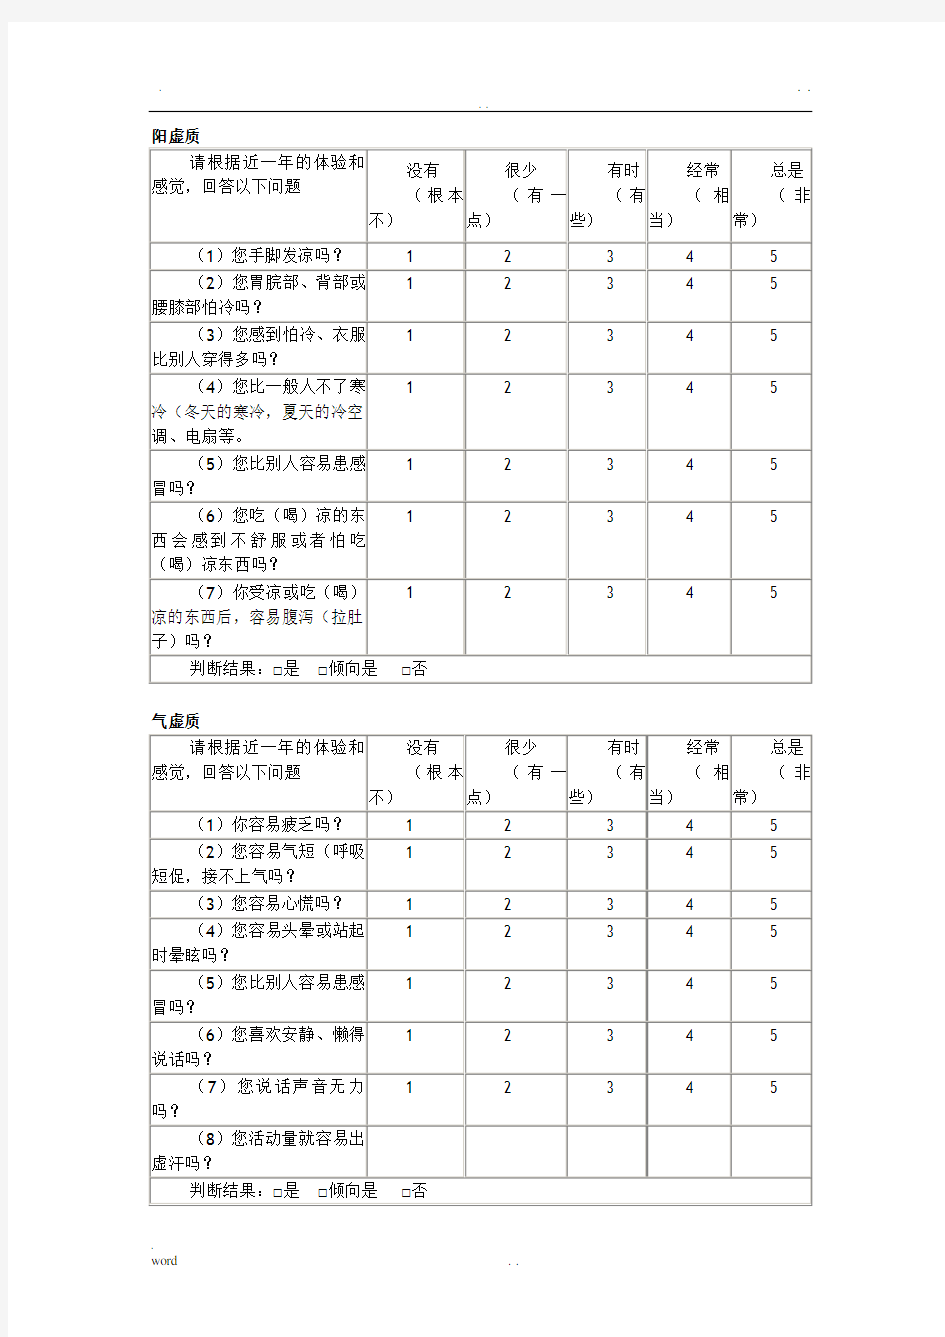 中医体质辨识标准(评分标准)